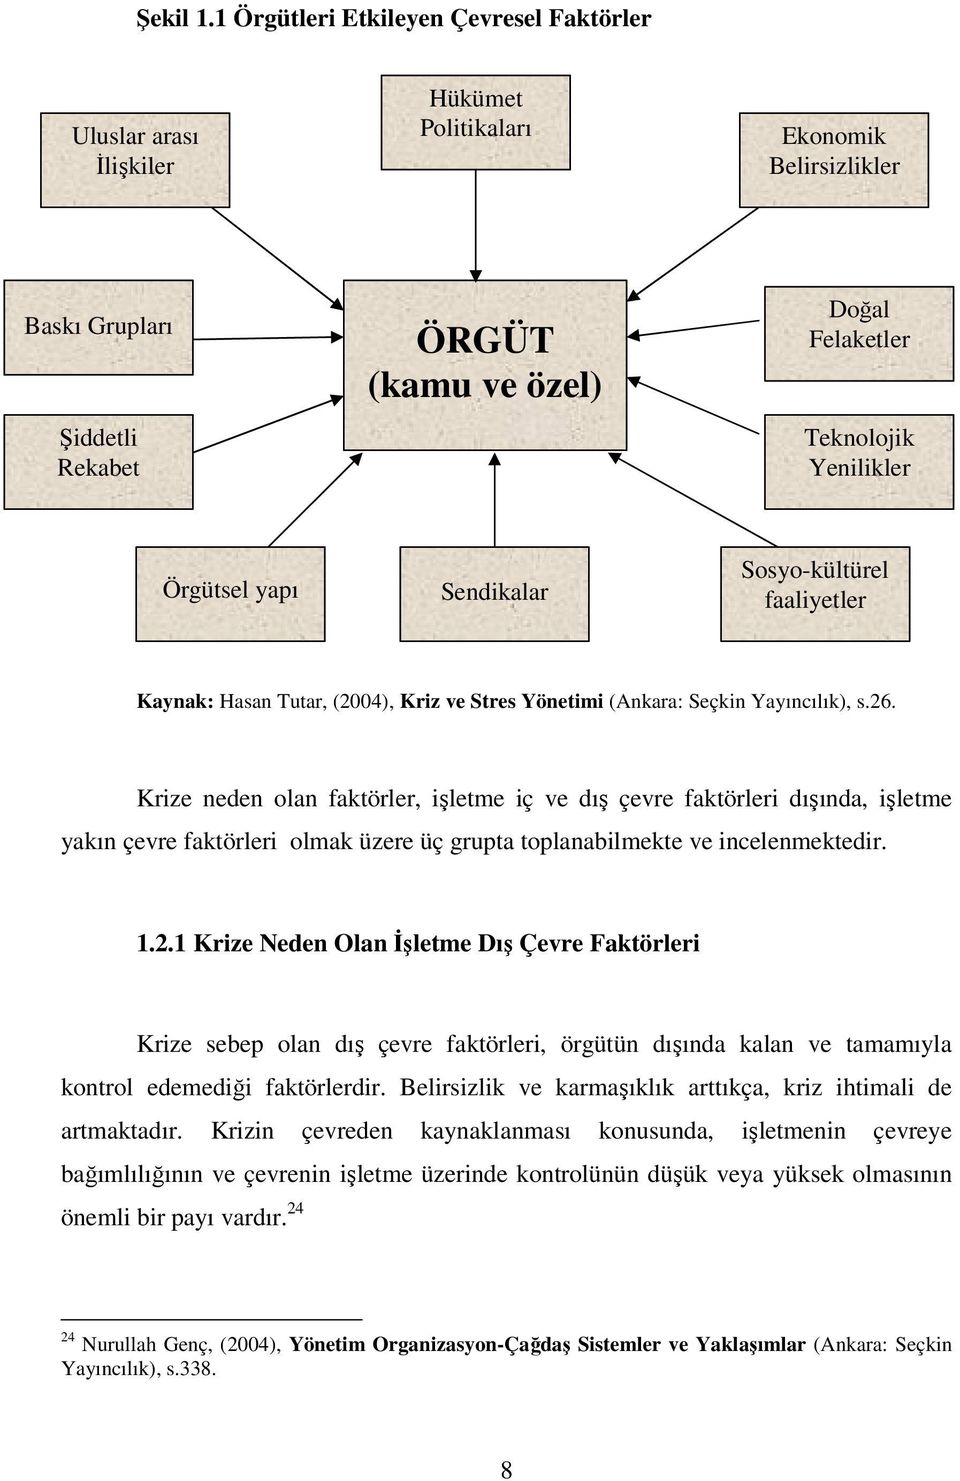 Yenilikler Örgütsel yapı Sendikalar Sosyo-kültürel faaliyetler Kaynak: Hasan Tutar, (2004), Kriz ve Stres Yönetimi (Ankara: Seçkin Yayıncılık), s.26.